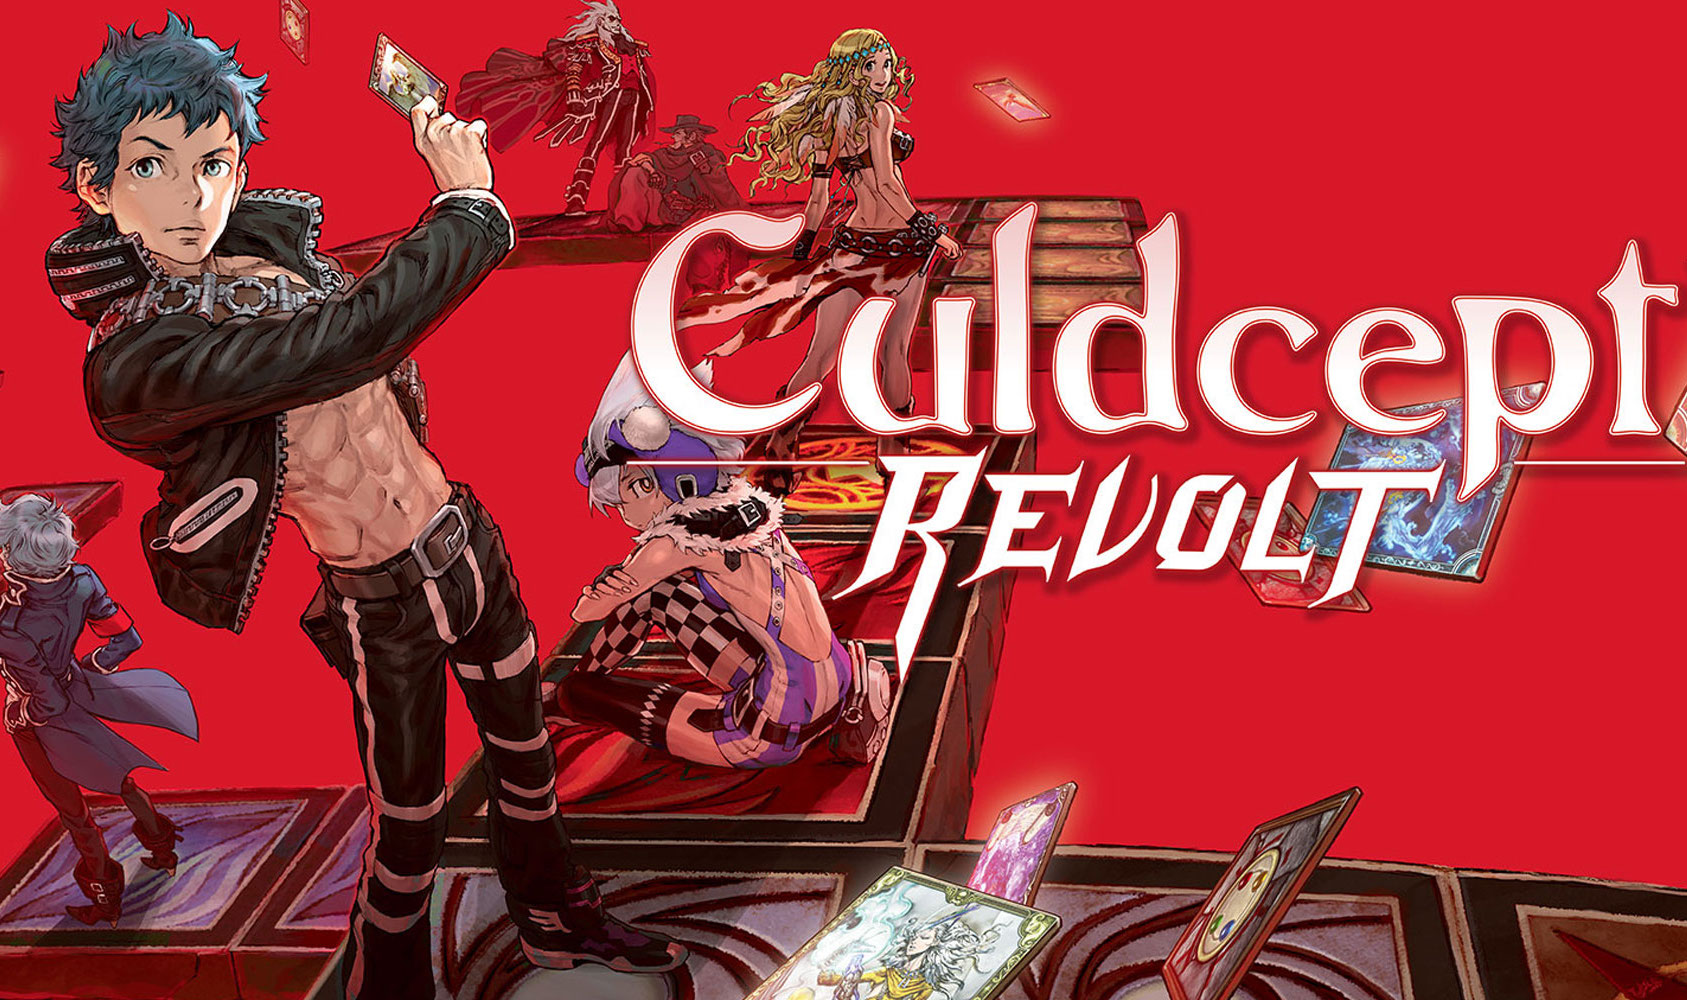 Nuovo trailer di Culdcept Revolt